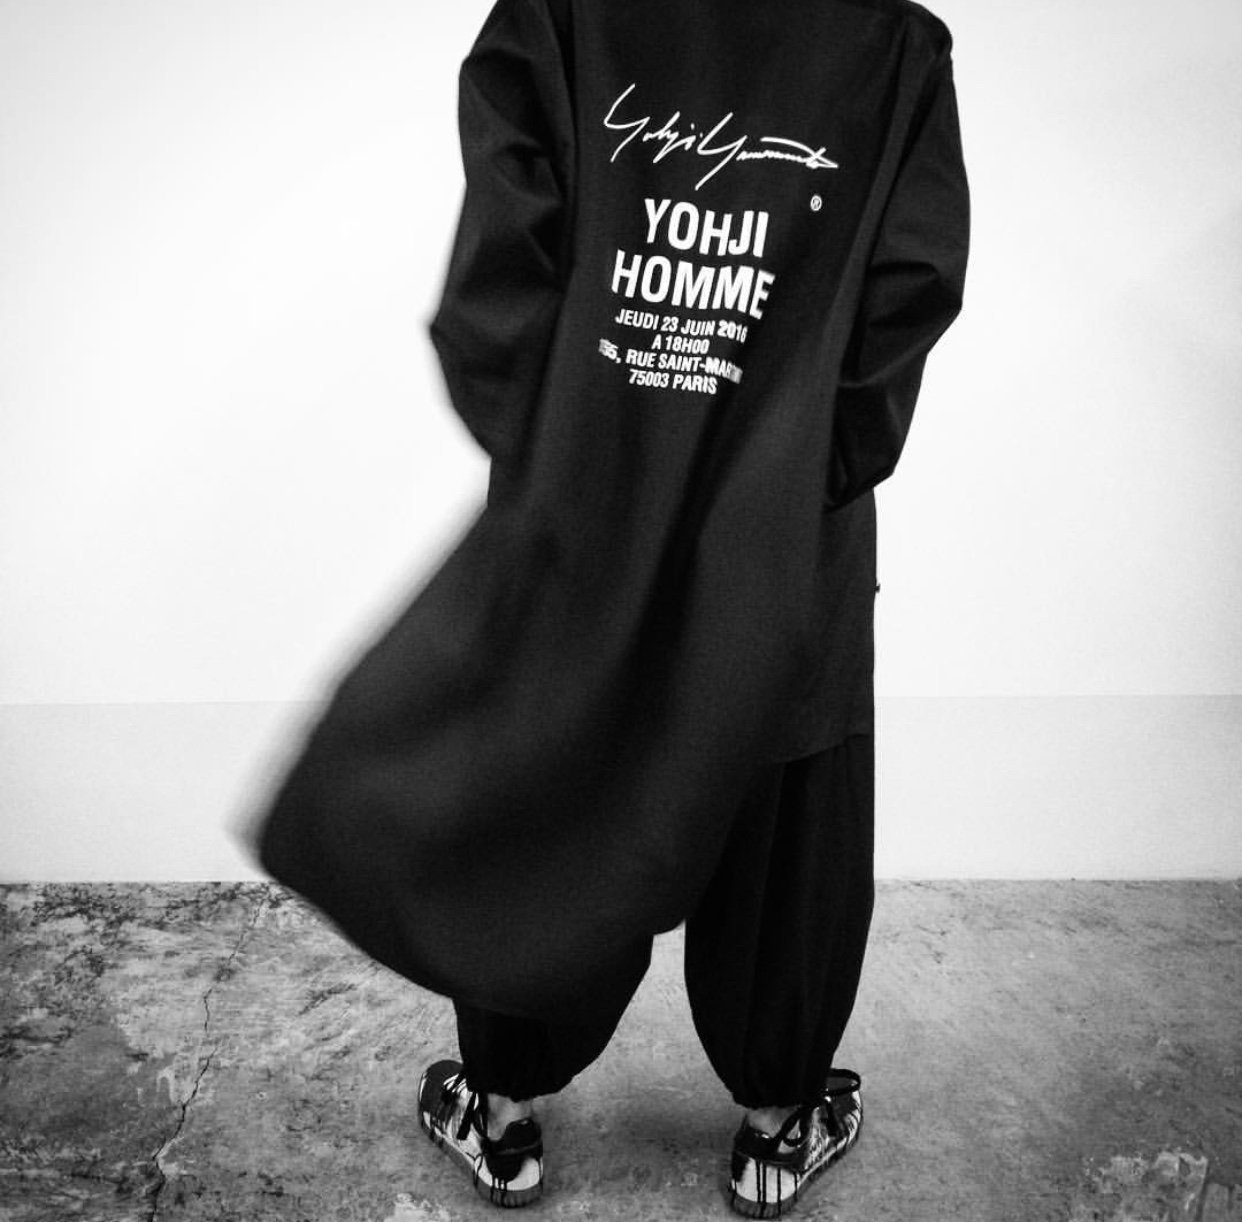 完售Yohji Yamamoto pour homme 山本耀司staff coat staff shirt 2018